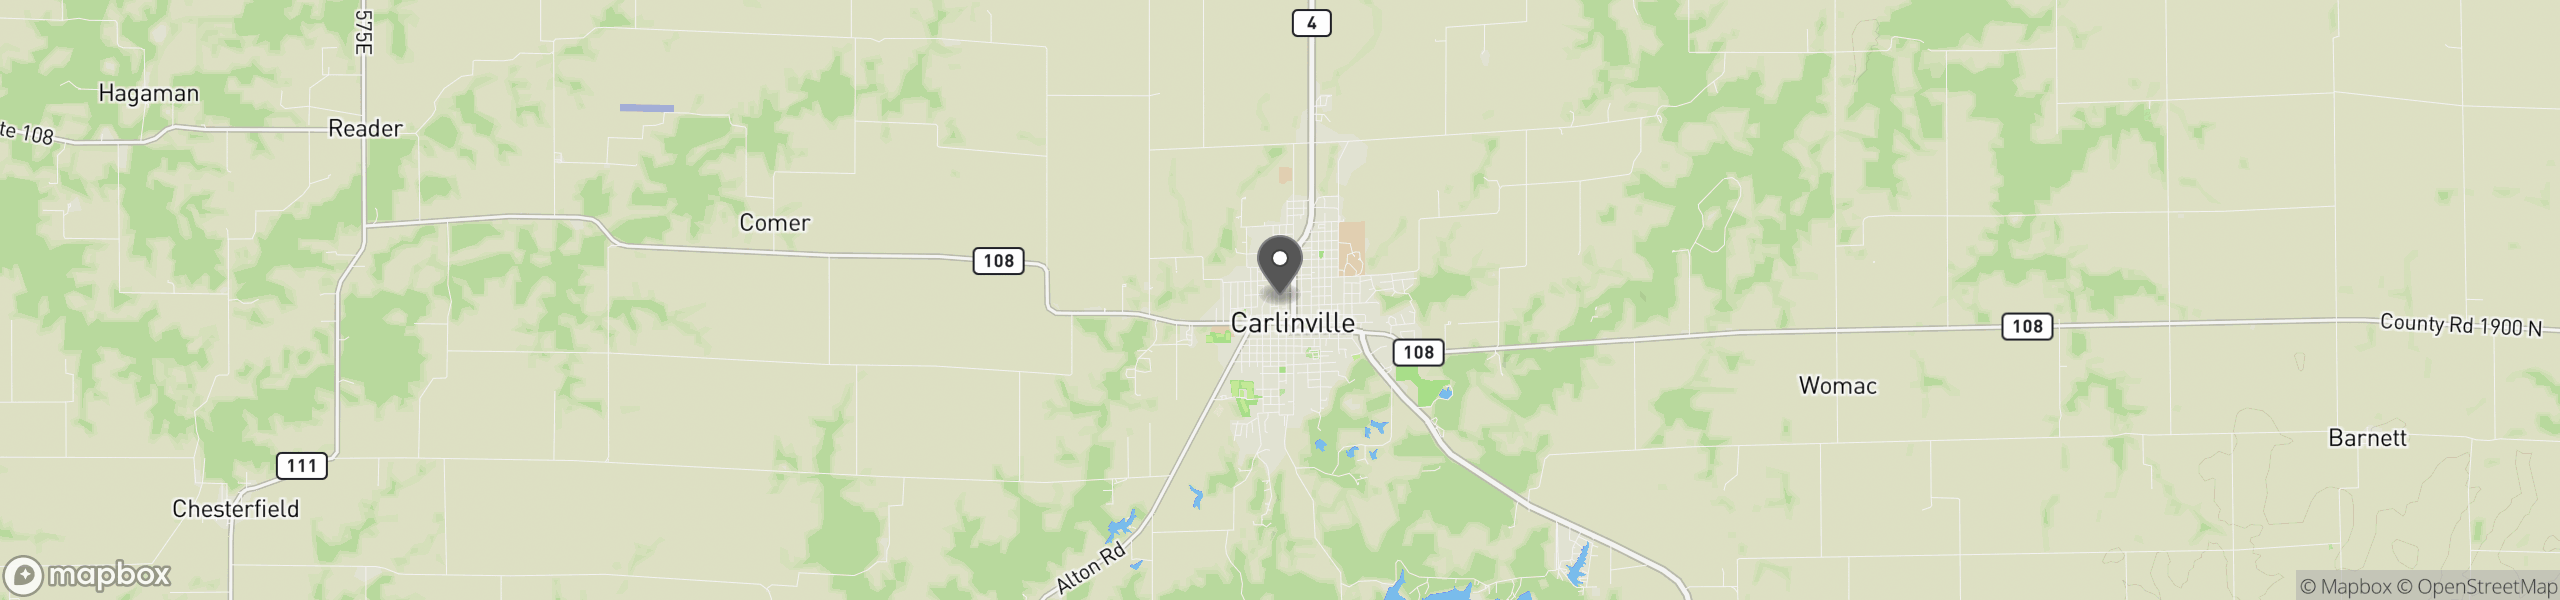 Carlinville, IL 62626